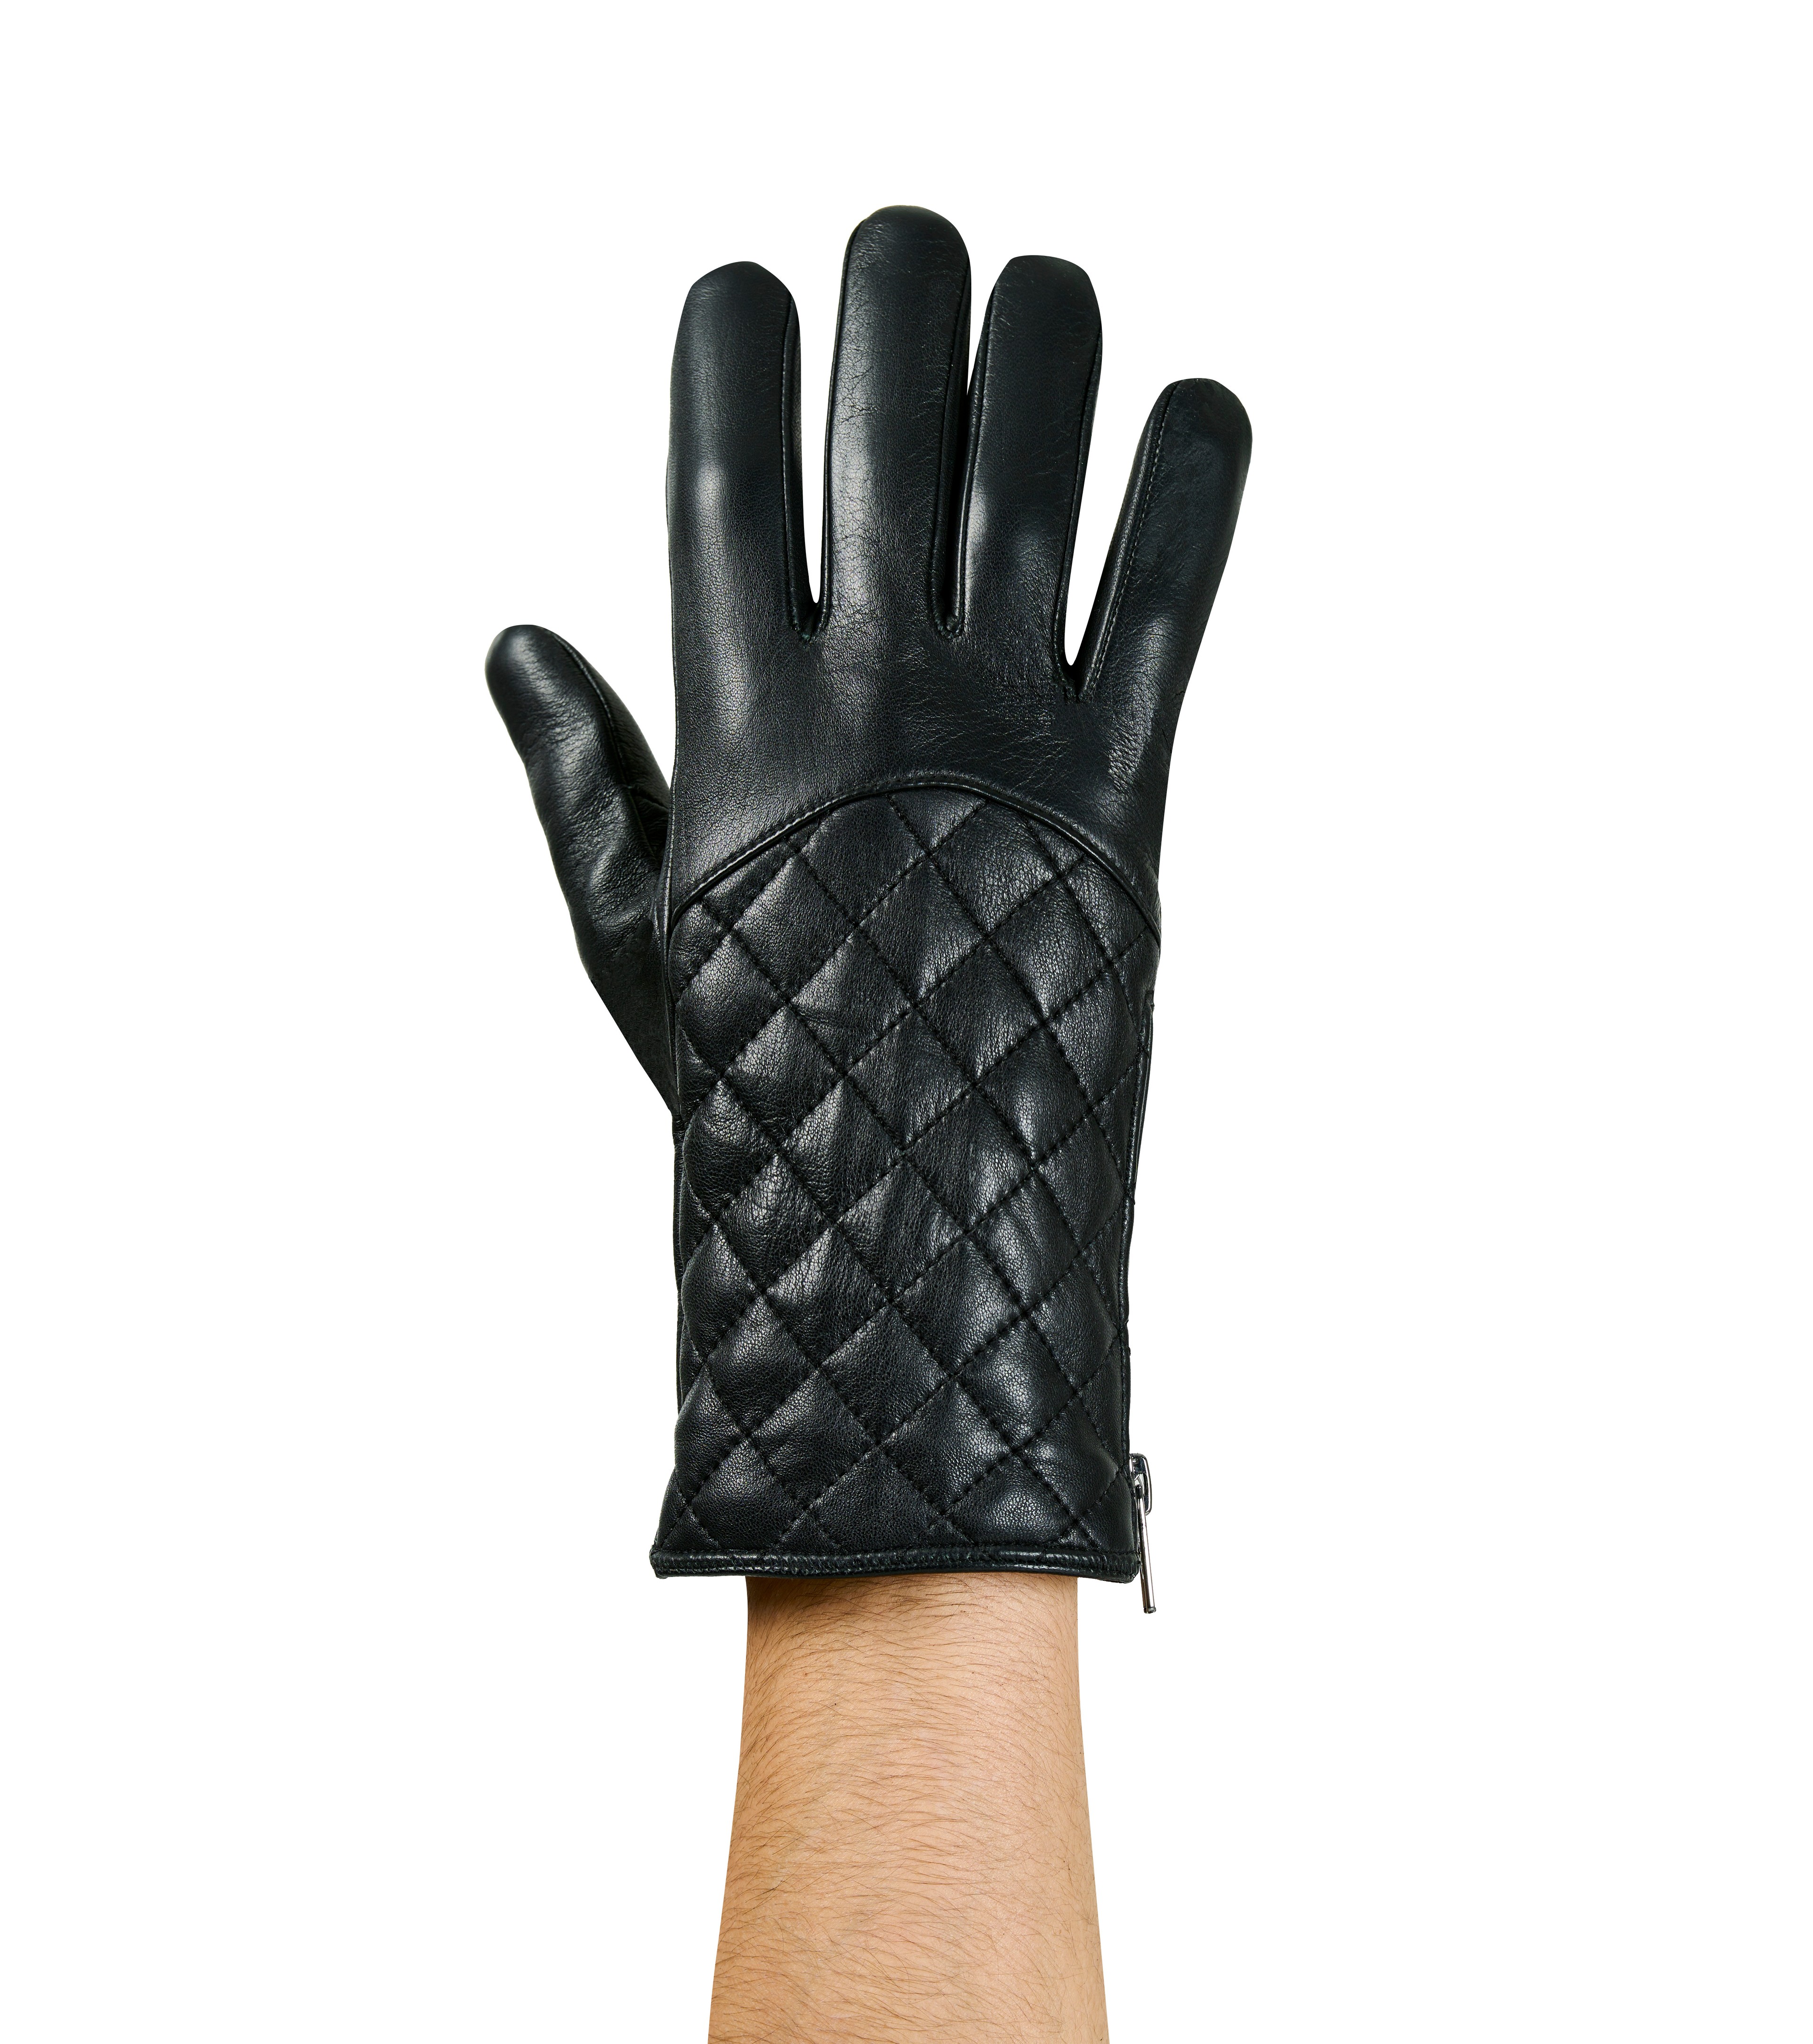 Sportster Biker Leather Gloves for Men